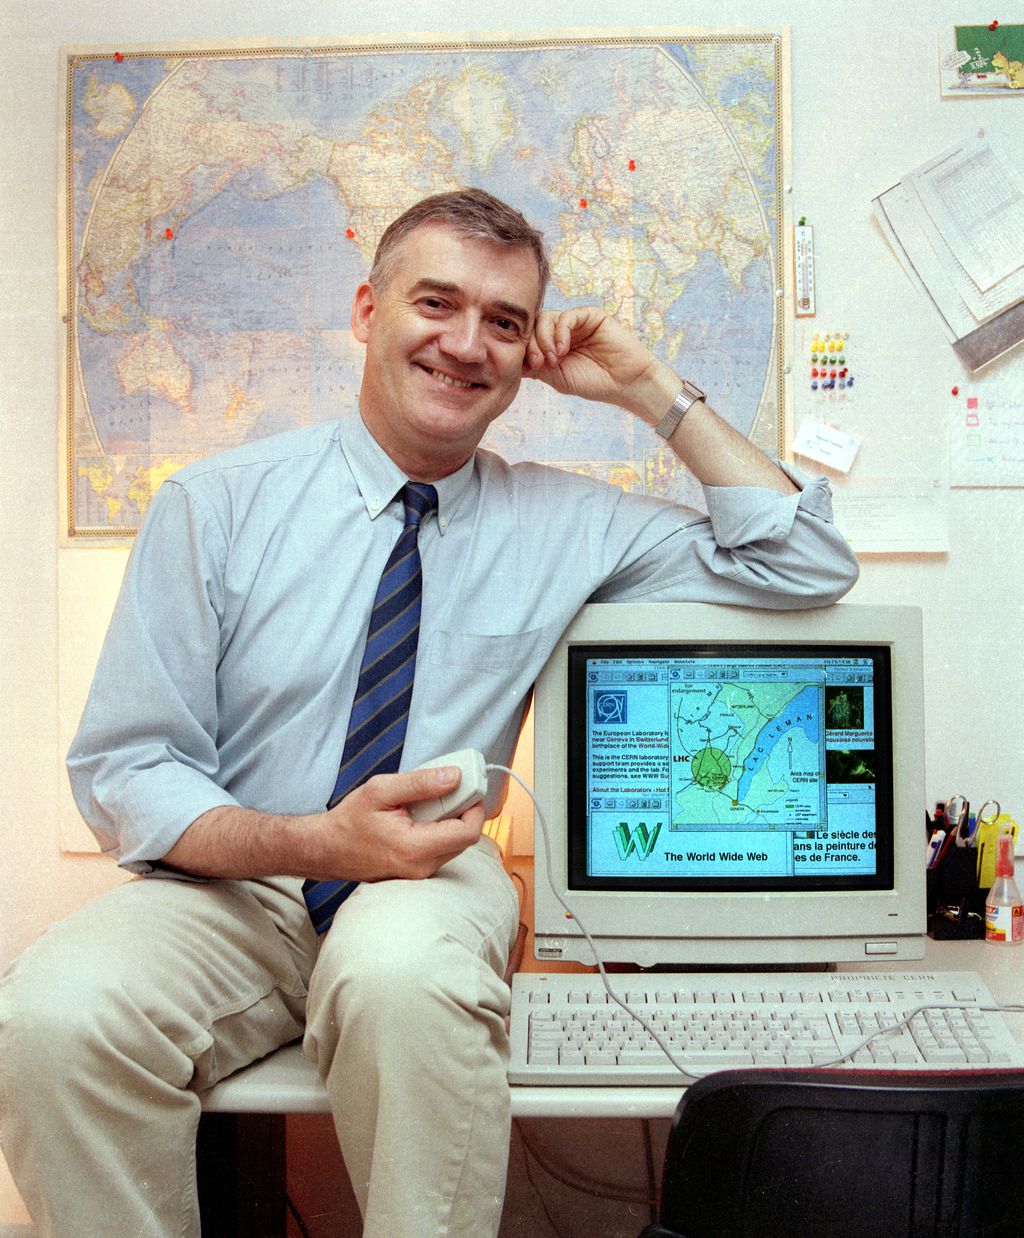 Robert Cailliau, engenheiro de sistemas do CERN, foi o primeiro parceiro de Tim Berners-Lee no projeto WWW. Imagem: Divulgação / CERN